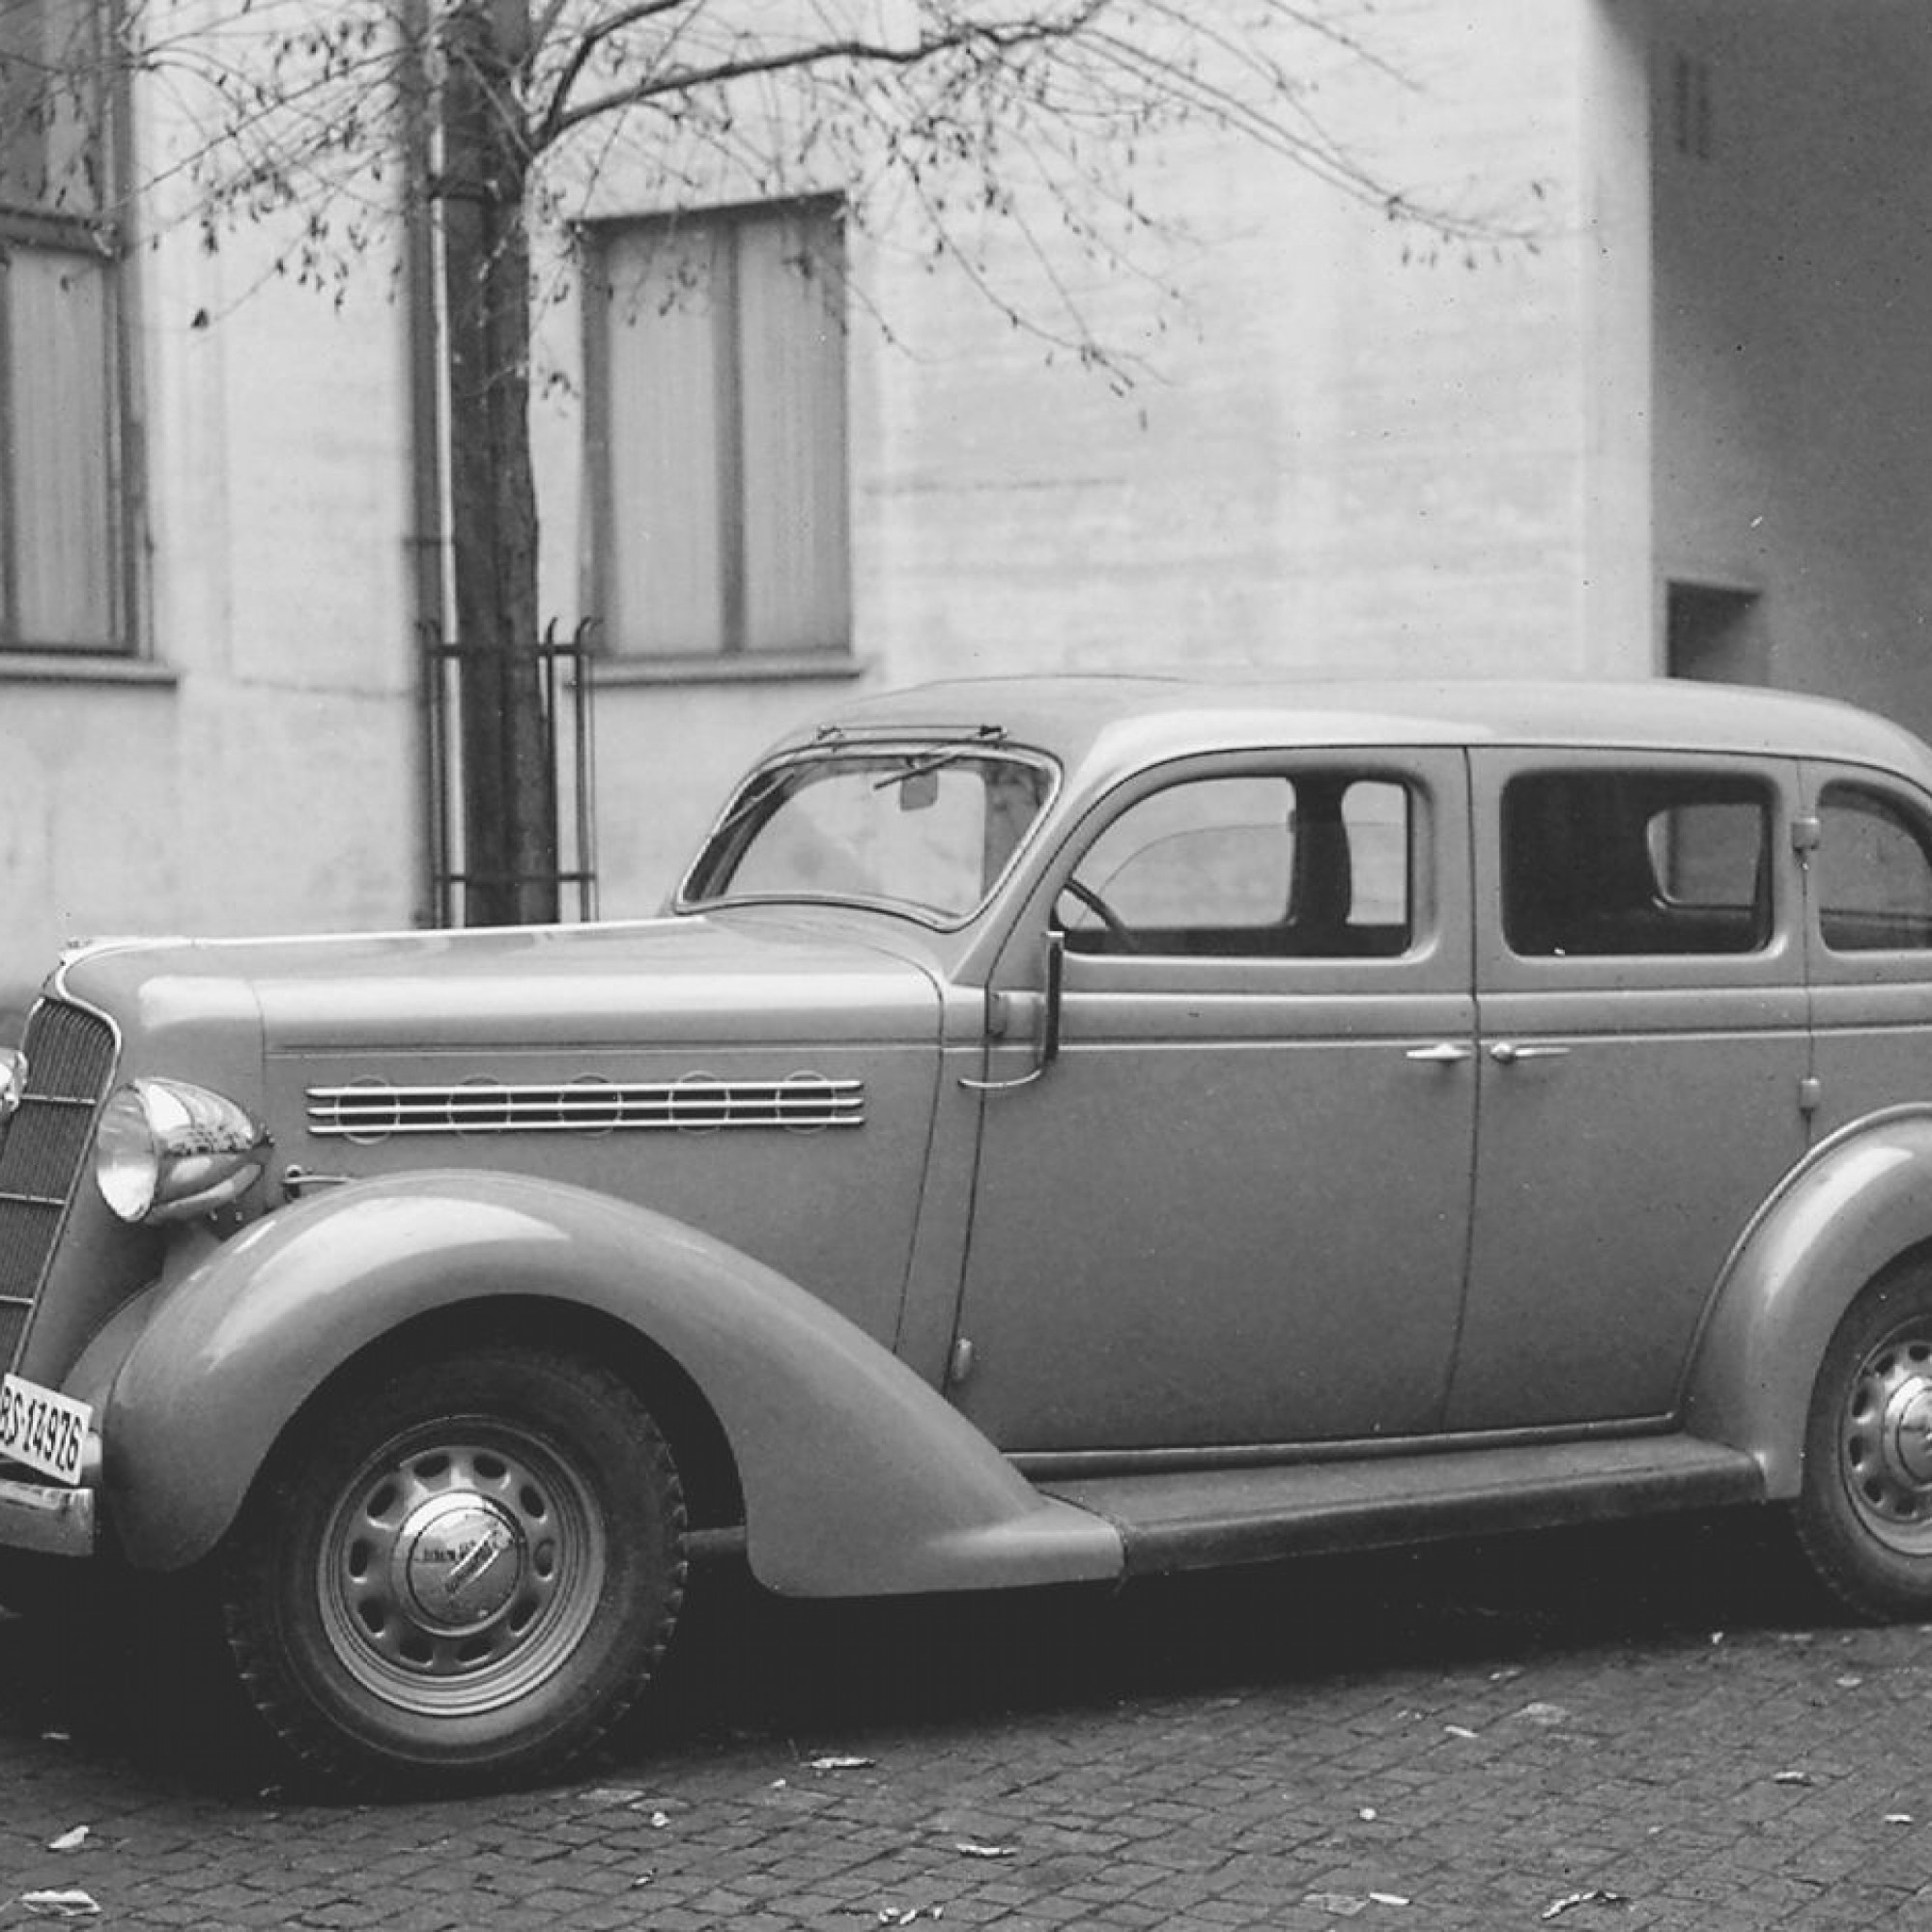 Das erste Alarmpikett-Fahrzeug der Basler Polizei wurde 1946 angeschafft: Ein Plymouth De Luxe 4 Door Touring Sedan Modell 1035.